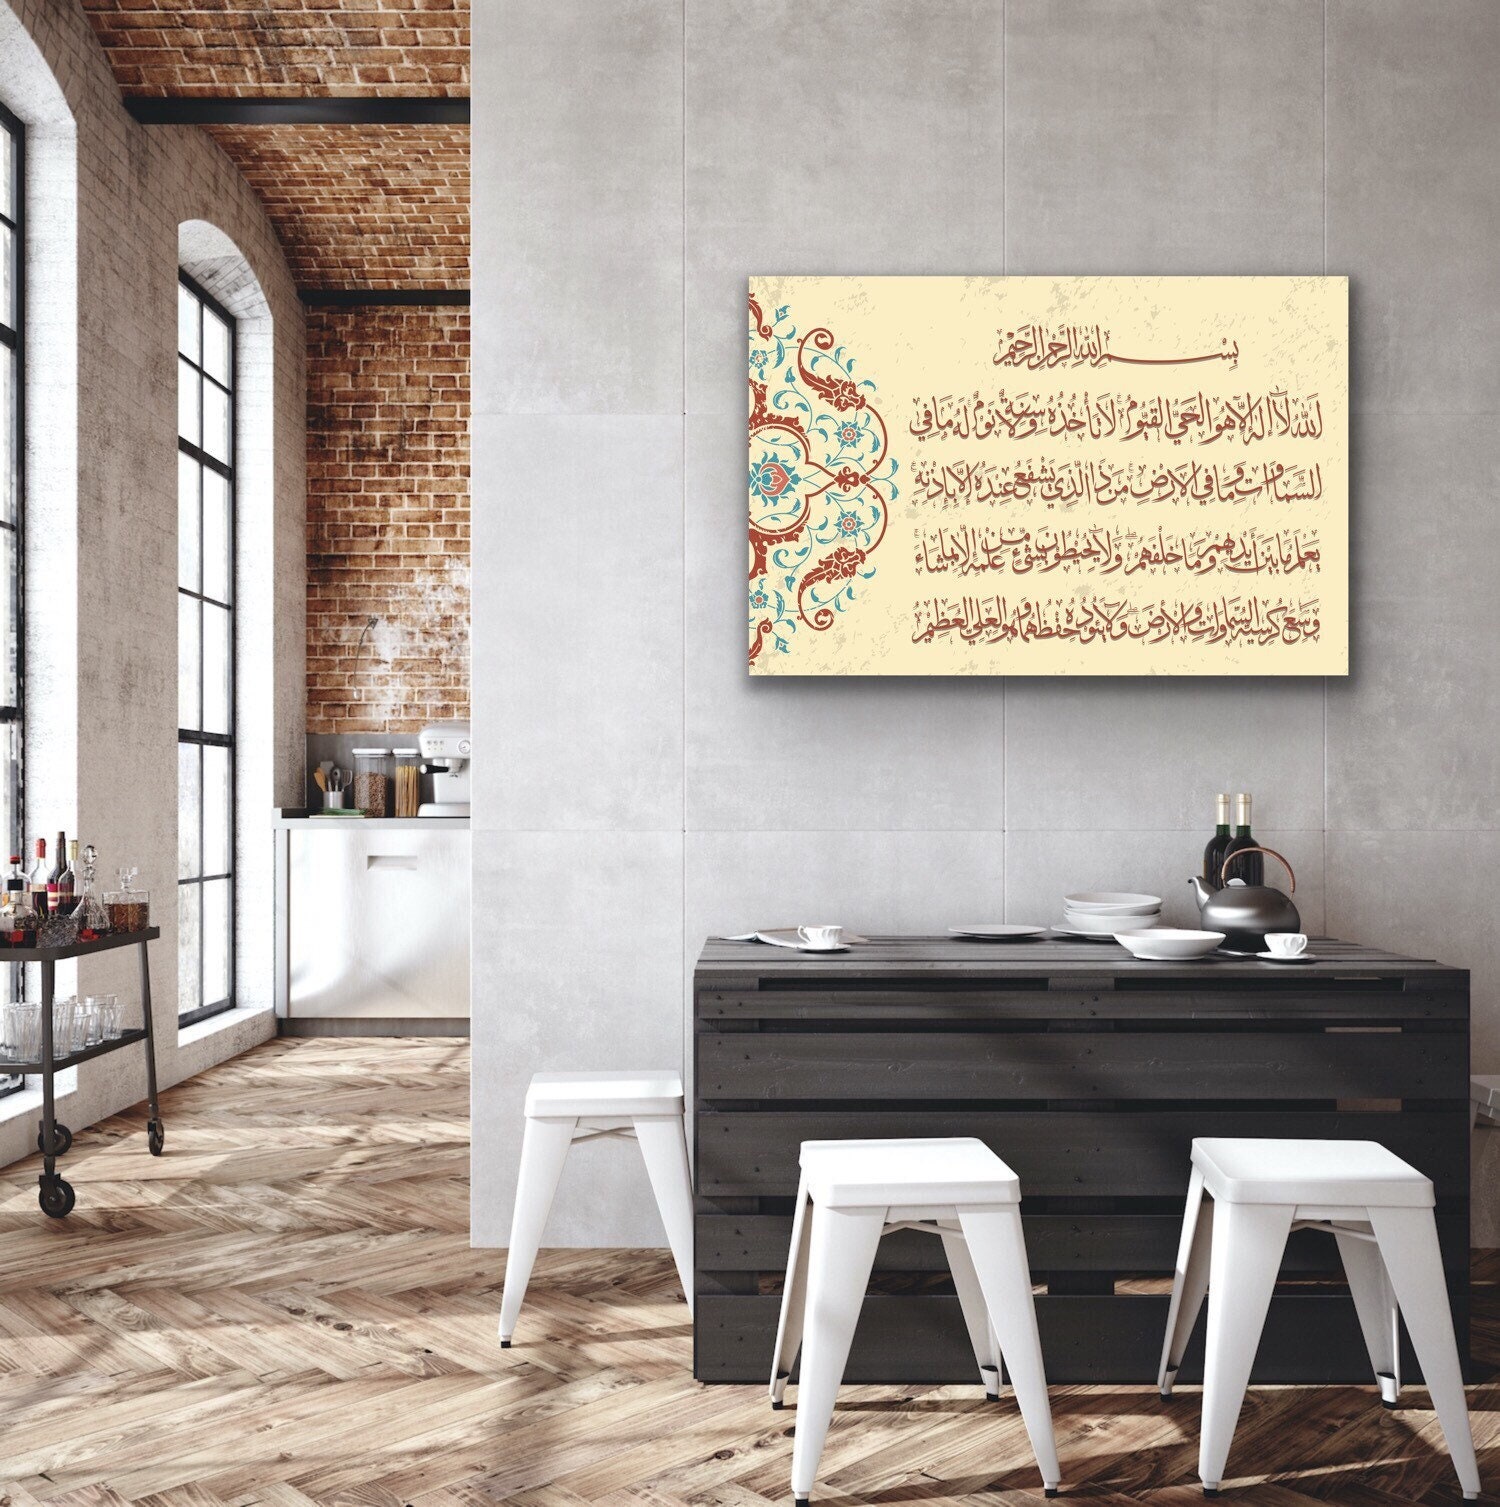 Basmala and Ayetul Kursi Islamic Canvas Wall Art Set